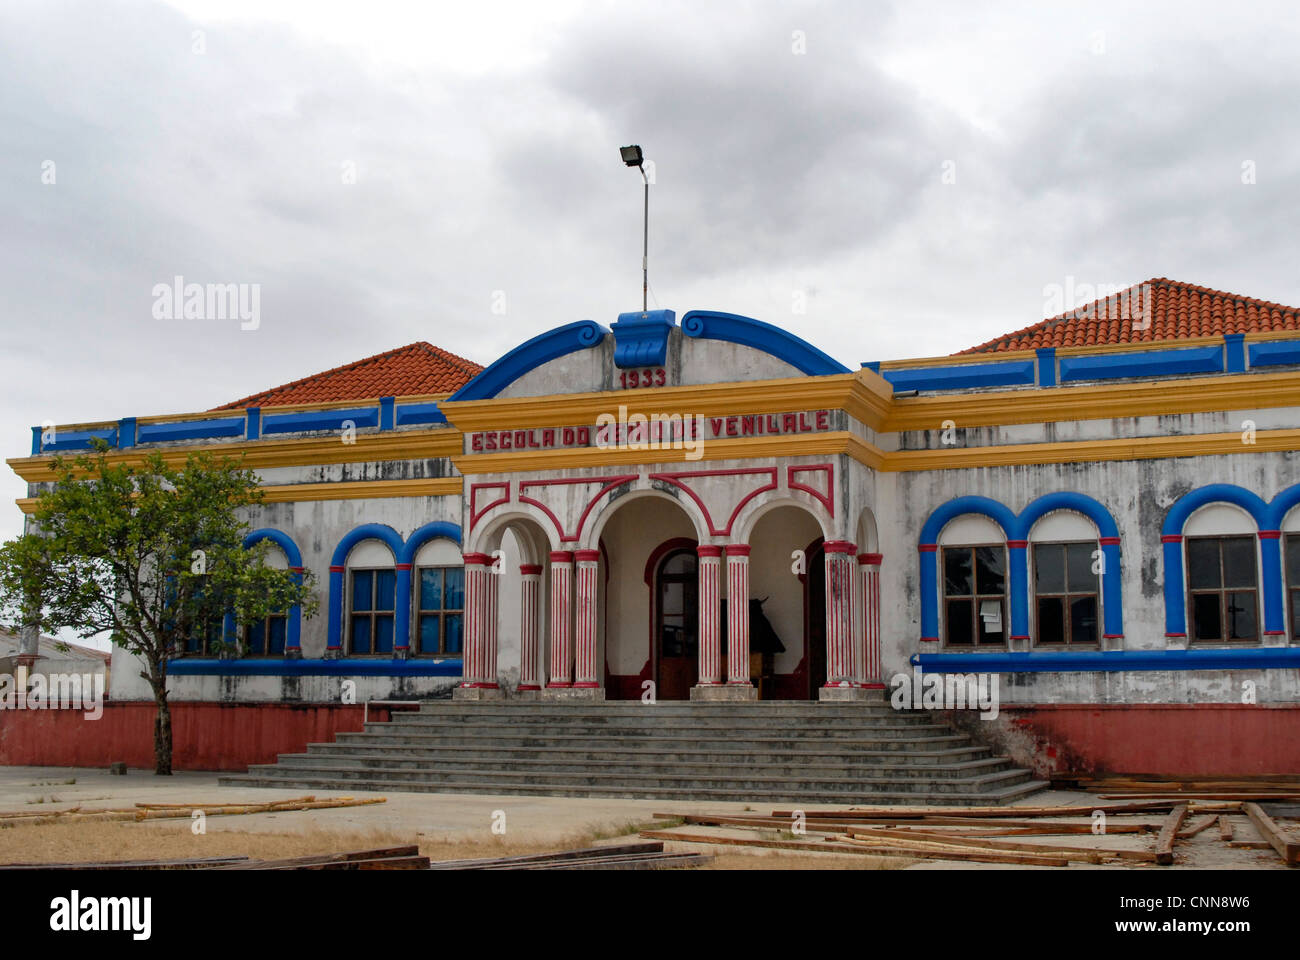 Escola  do Reino de Venilale,  an example of Portuguese colonial architecture in  the Baucau district Timor Leste. Stock Photo